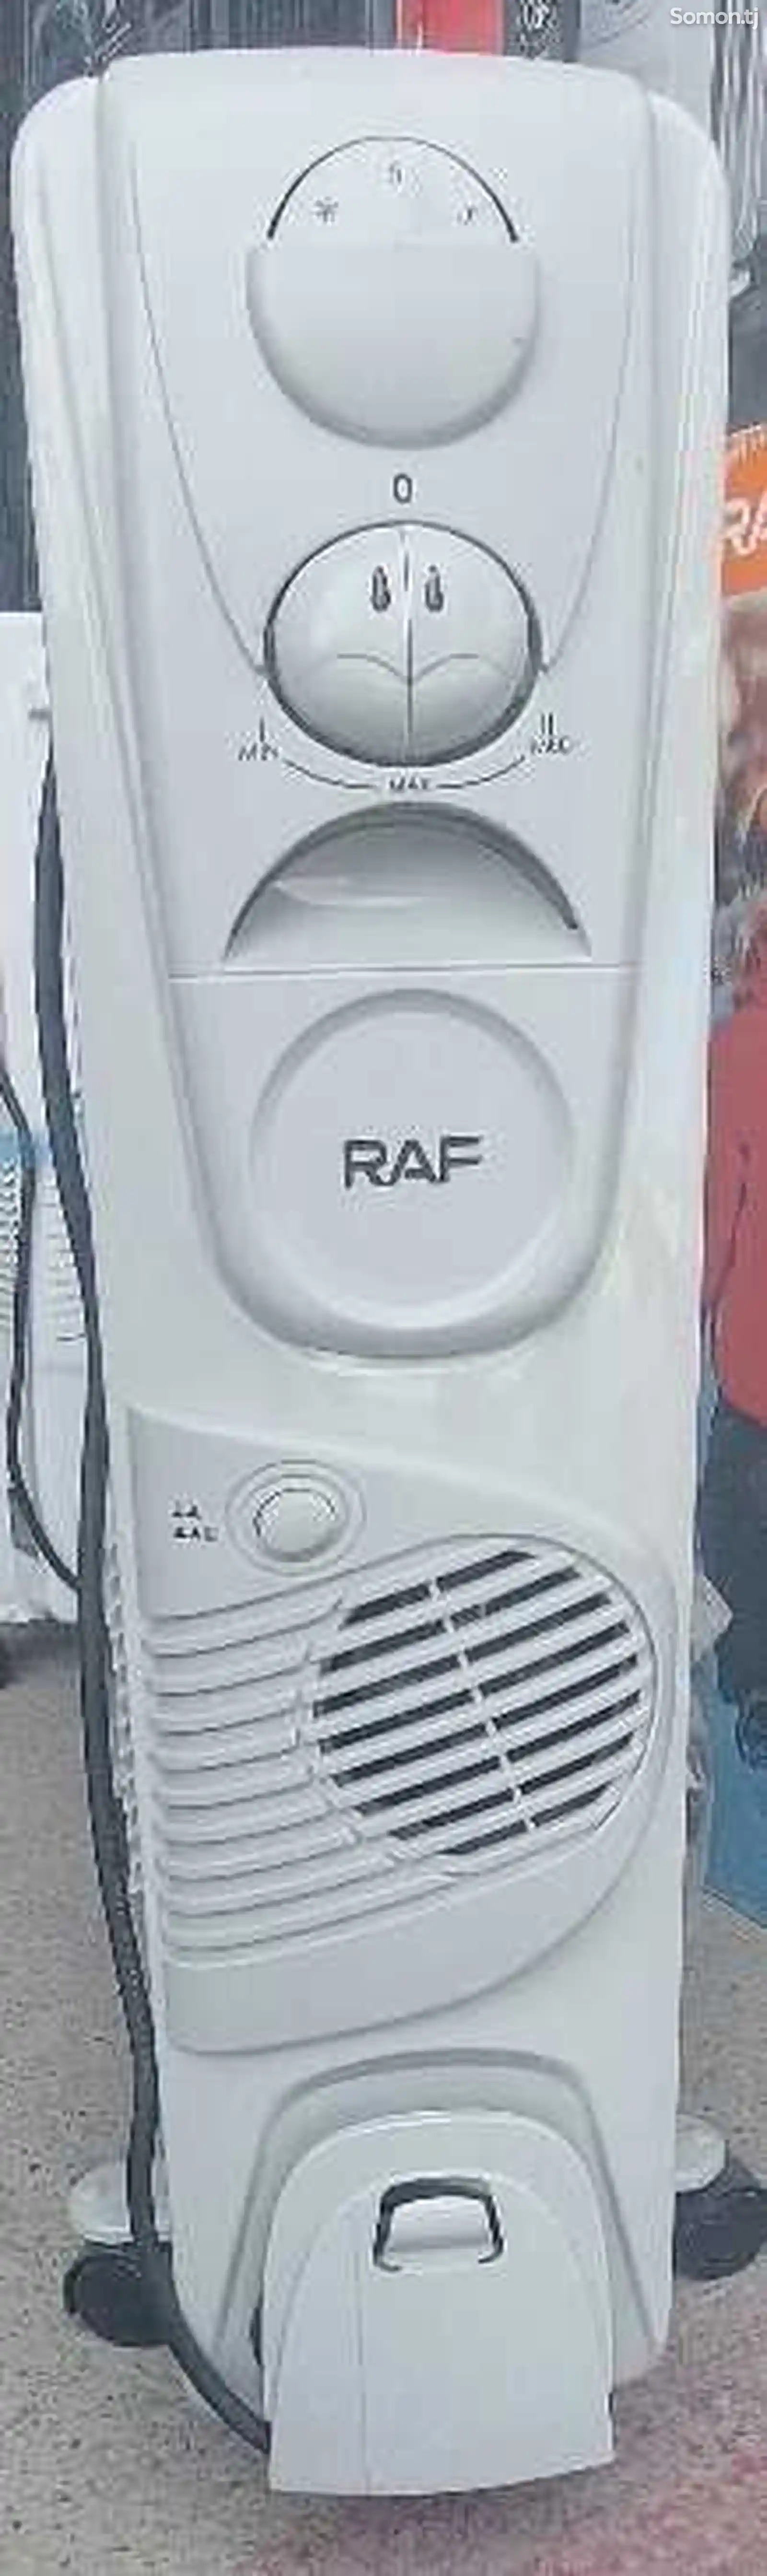 Радиатор RAF-13-4